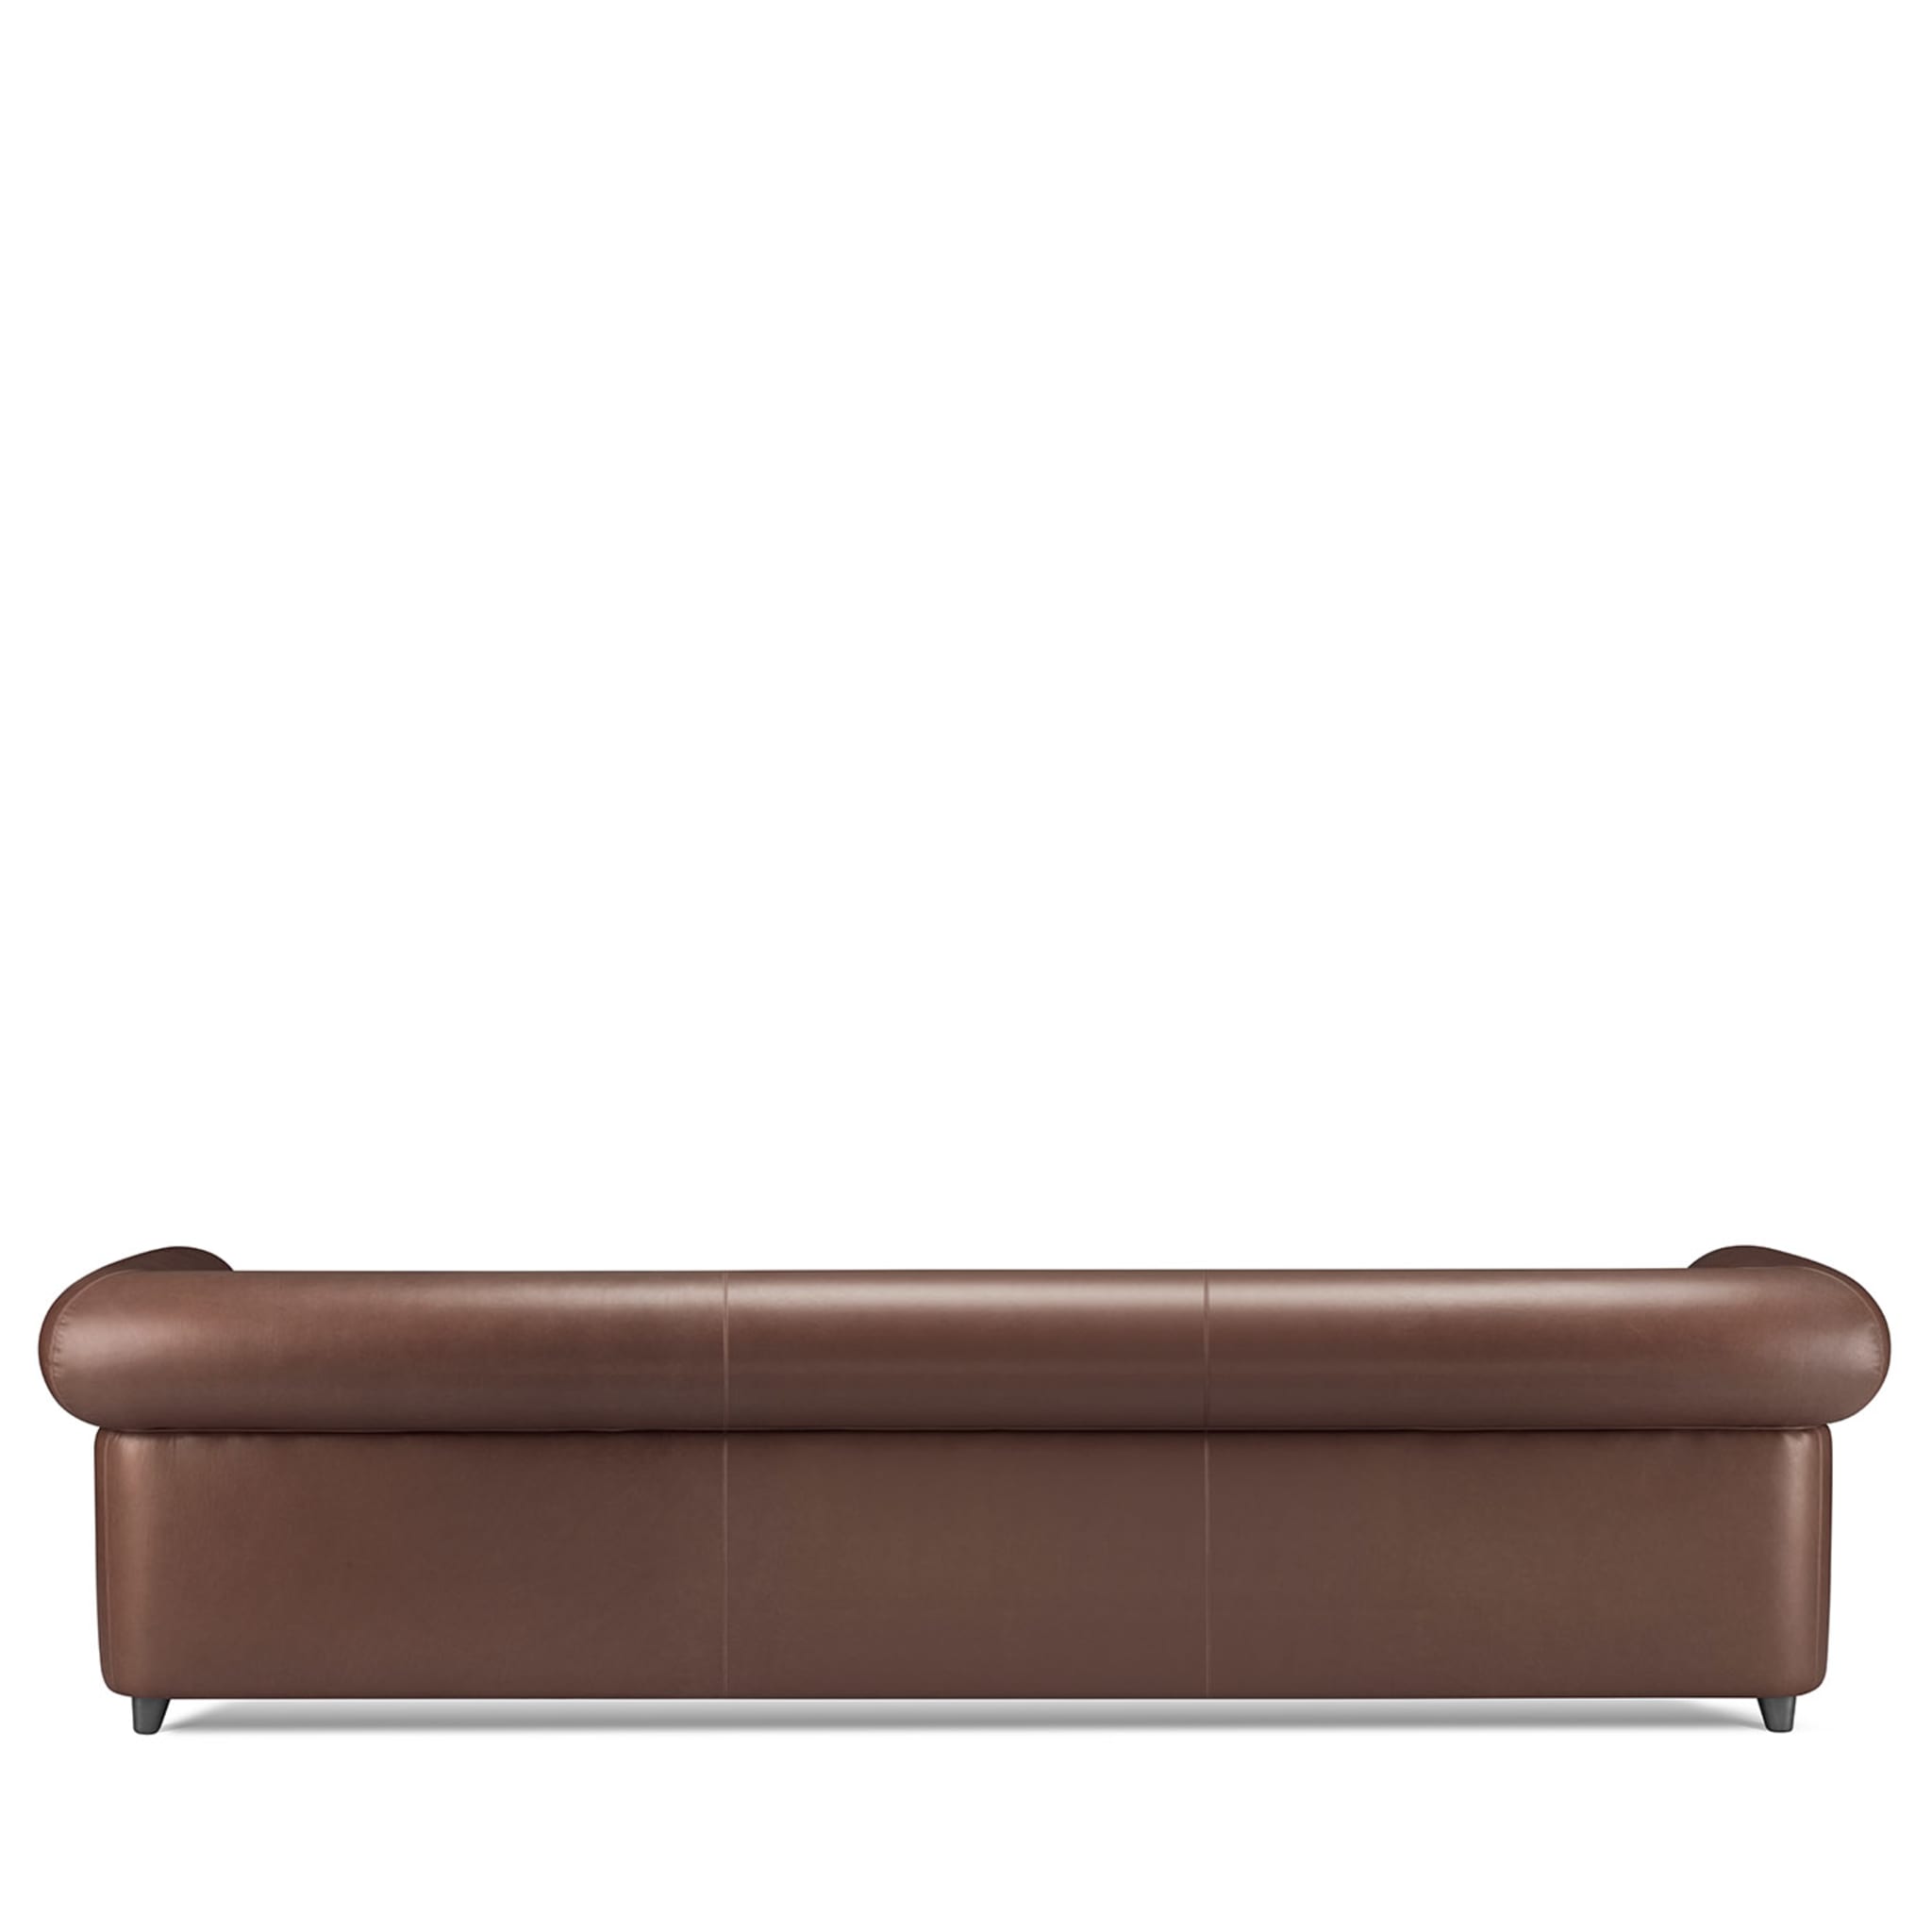 Portofino 3-Seater Brown Sofa by Stefano Giovannoni - Alternative view 1